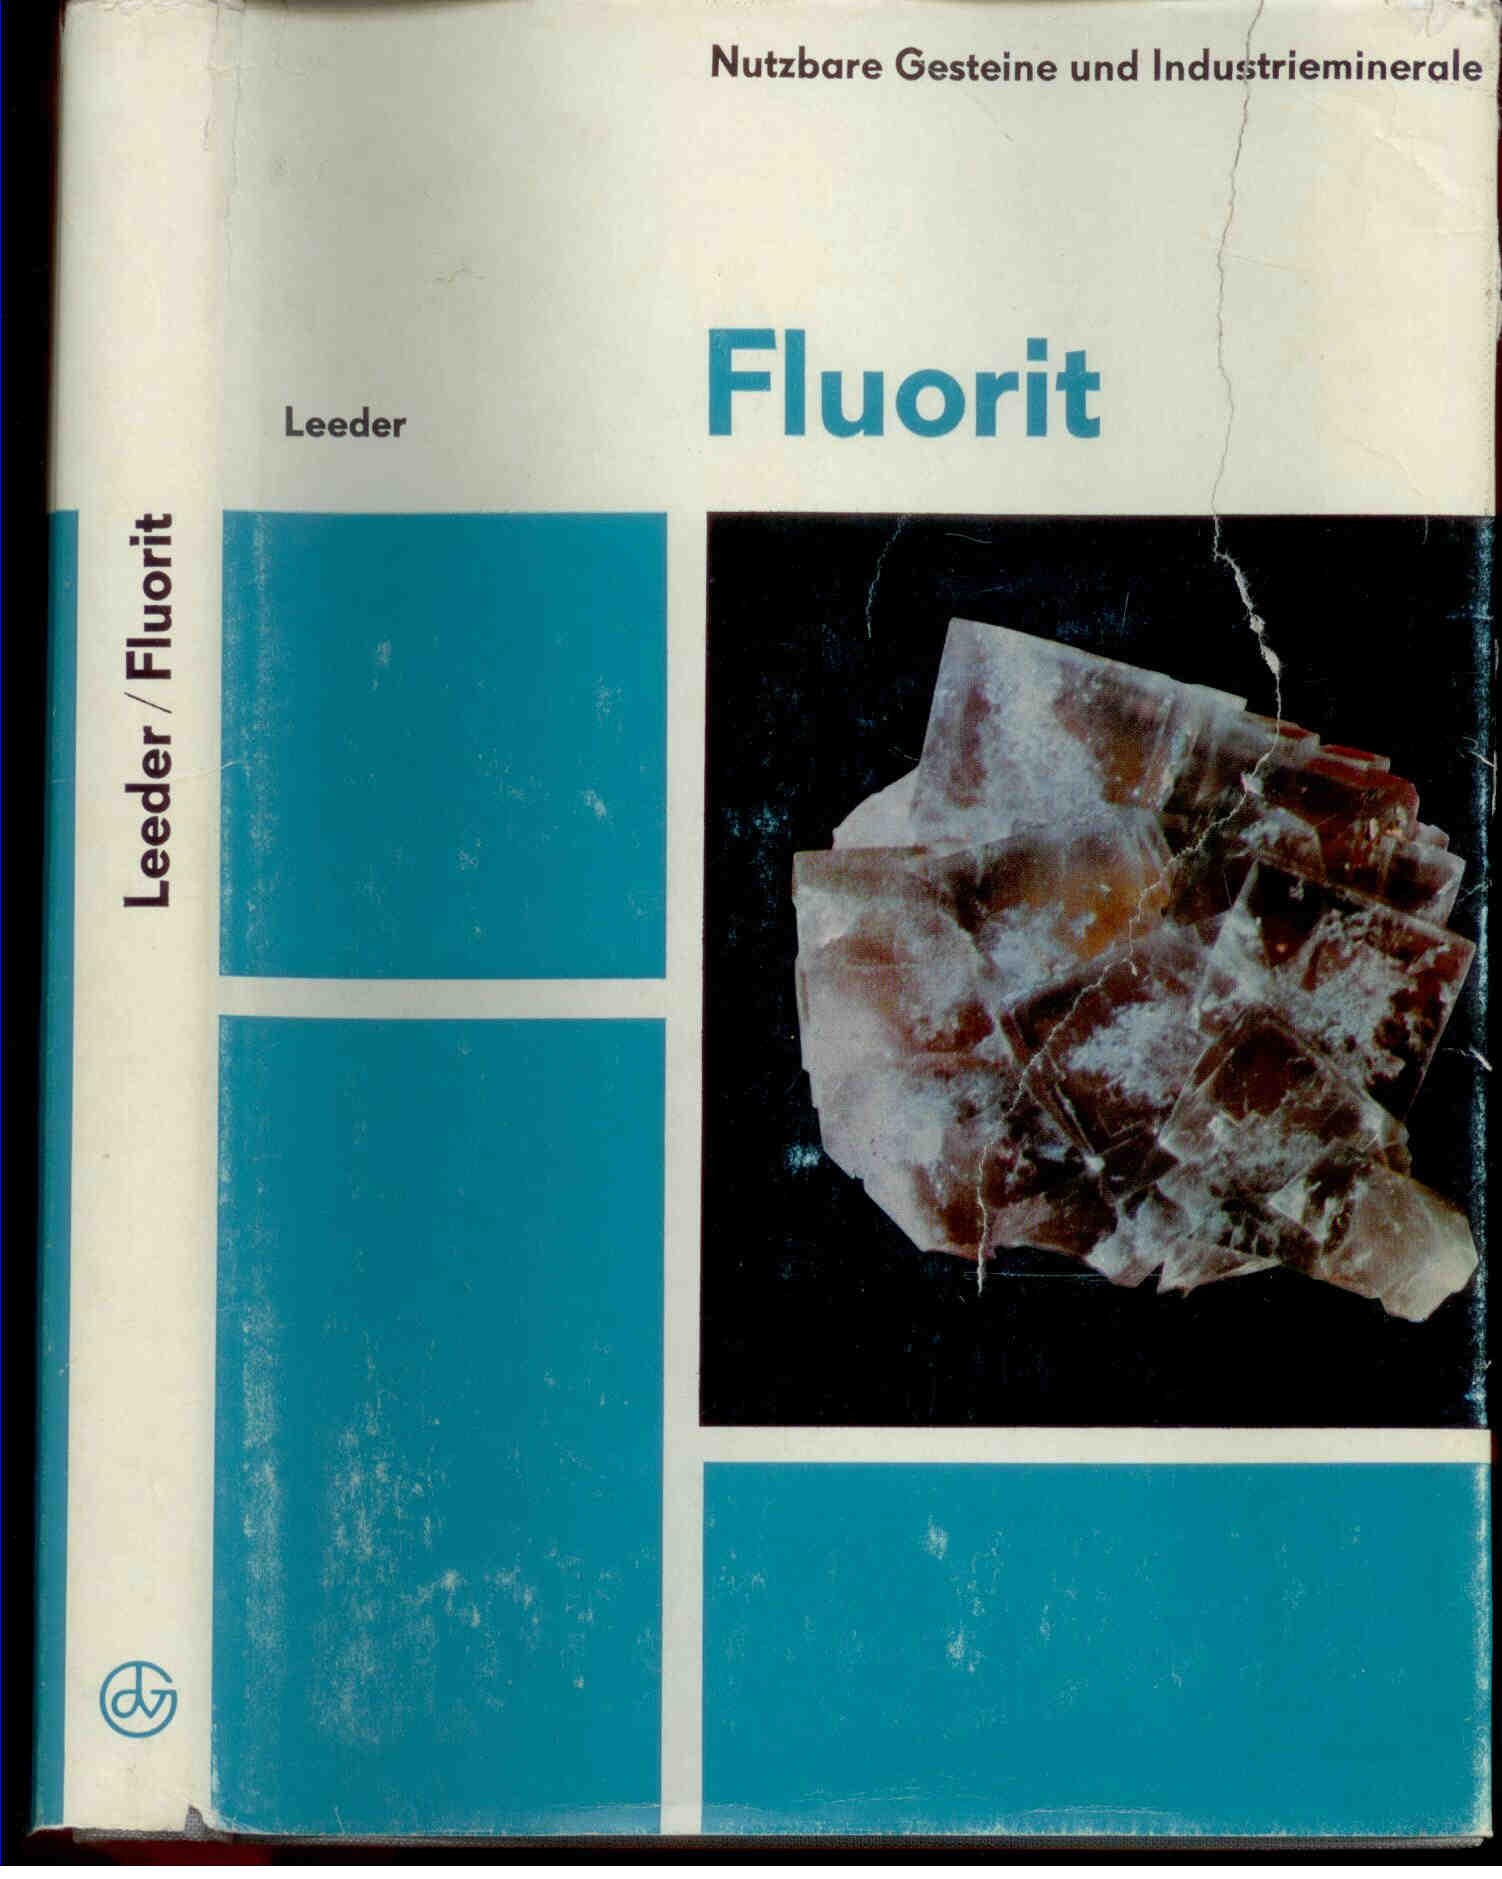 Leeder, O.: Fluorit . Monographienreihe Nutzbare Gesteine und Industrieminerale.